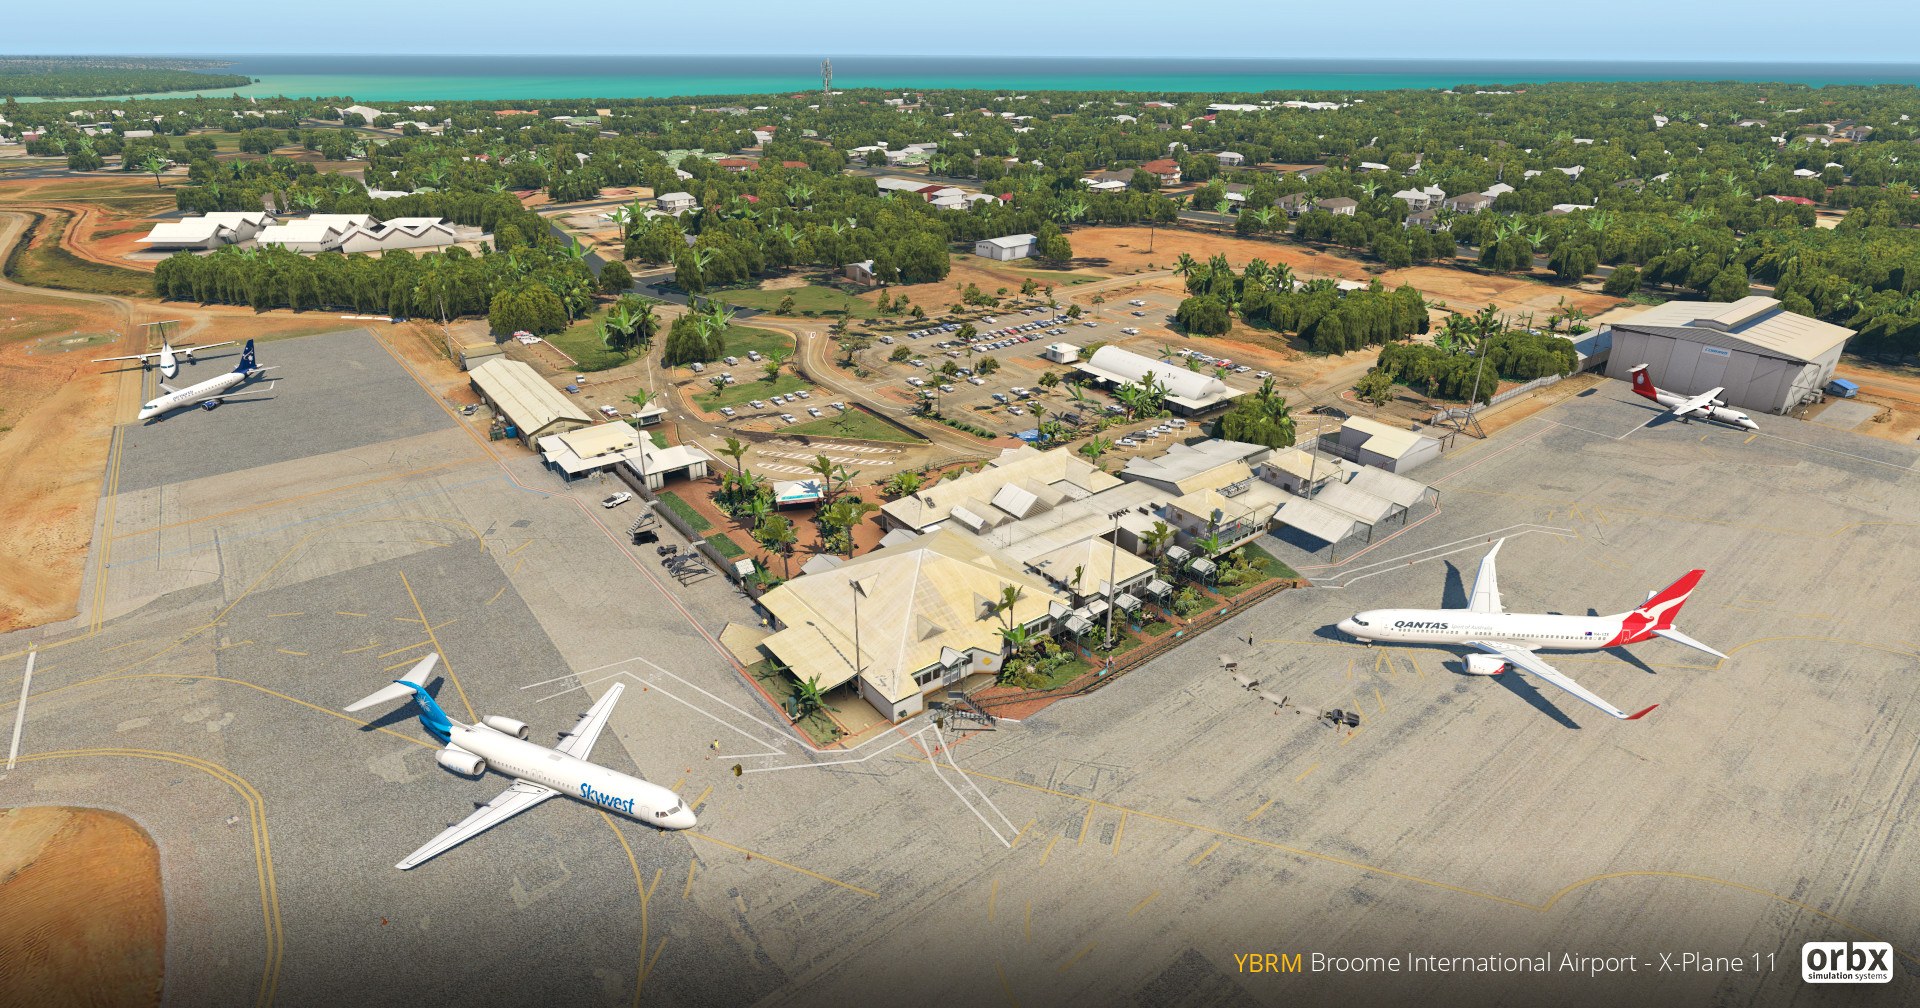 Flughafen Broome von Orbx für X-Plane 11